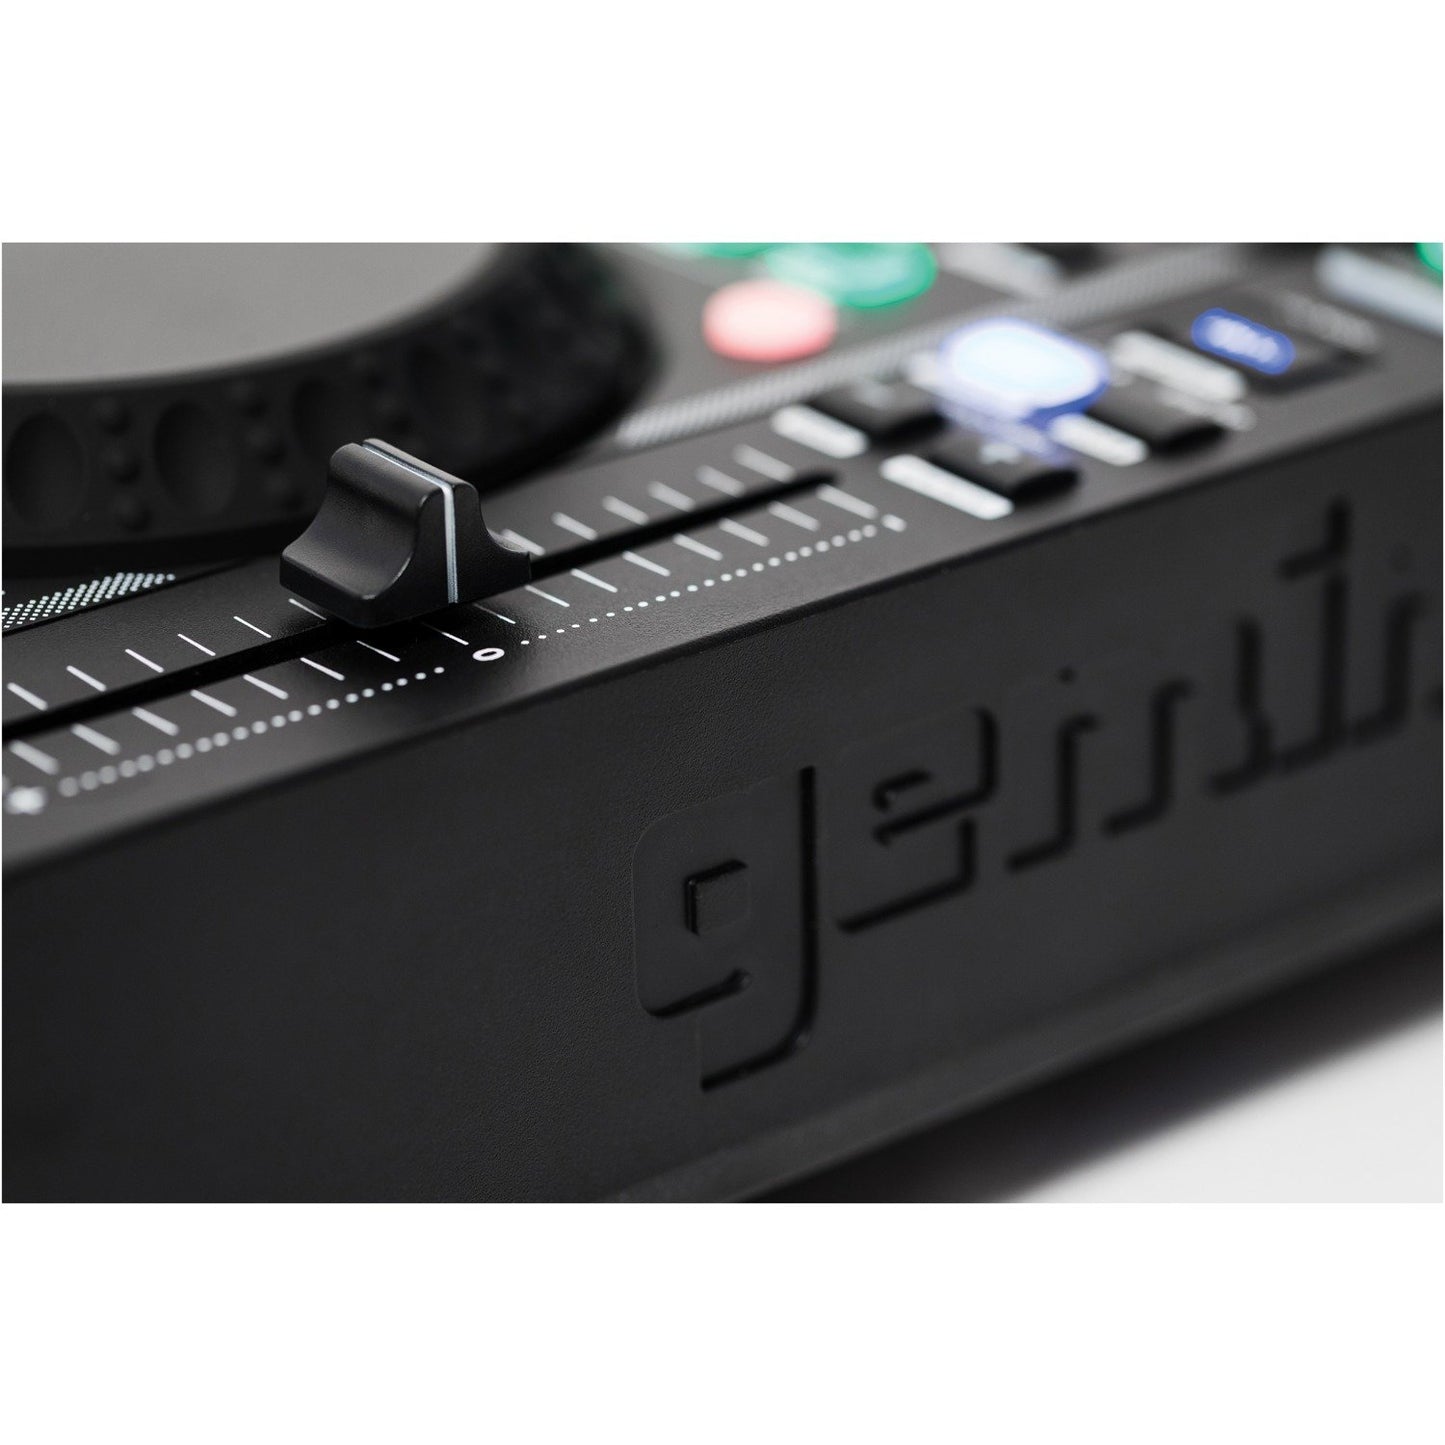 Gemini MDJ-600 MDJ-600 Professional USB & CD Media Player